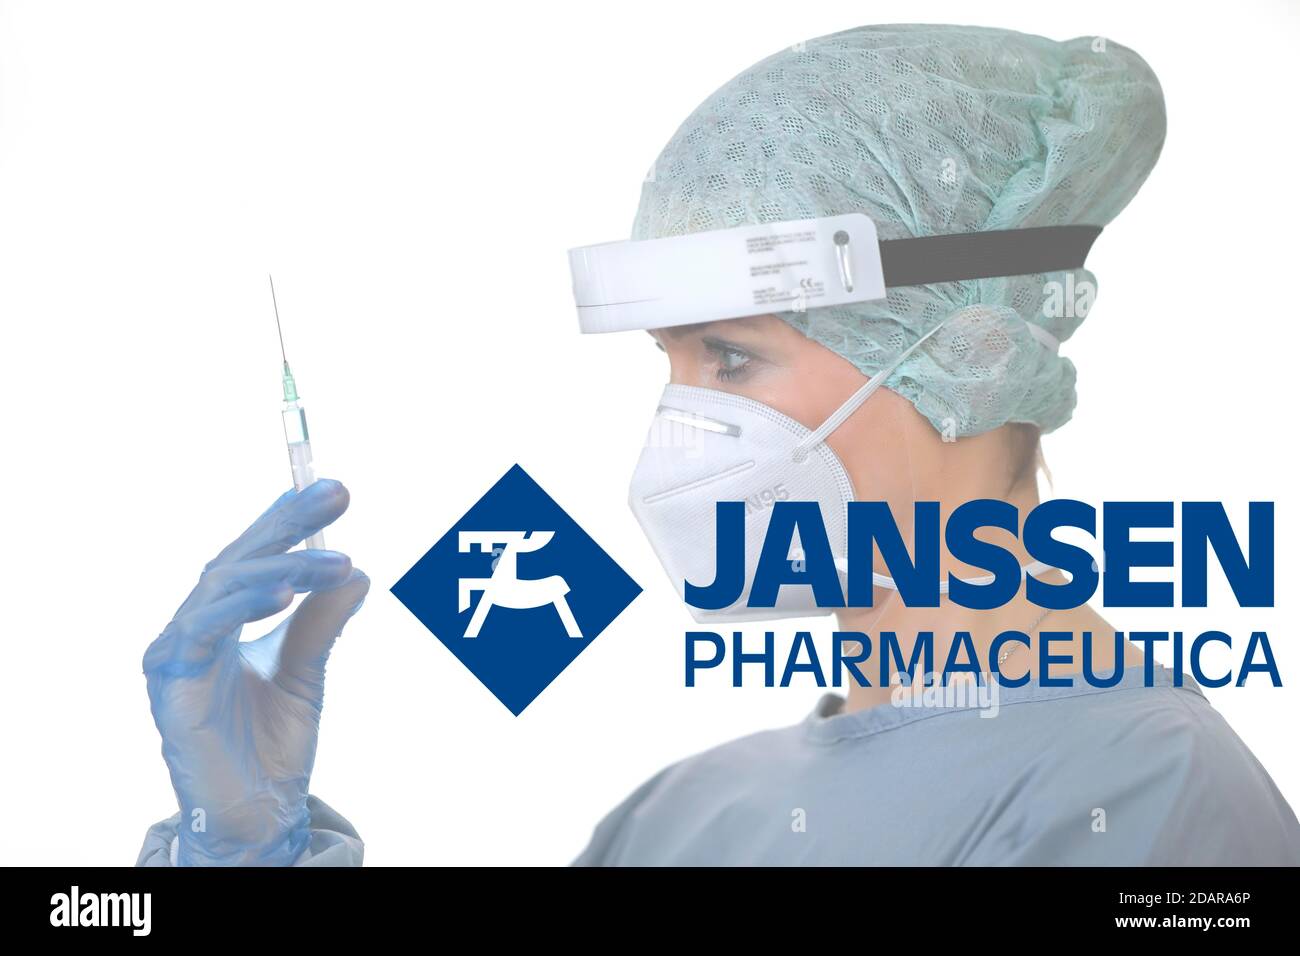 Image symbole vaccin Corona de JANSSEN PHARMACEUTICA, femme avec seringue, crise corona, Bade-Wurtemberg, Allemagne Banque D'Images